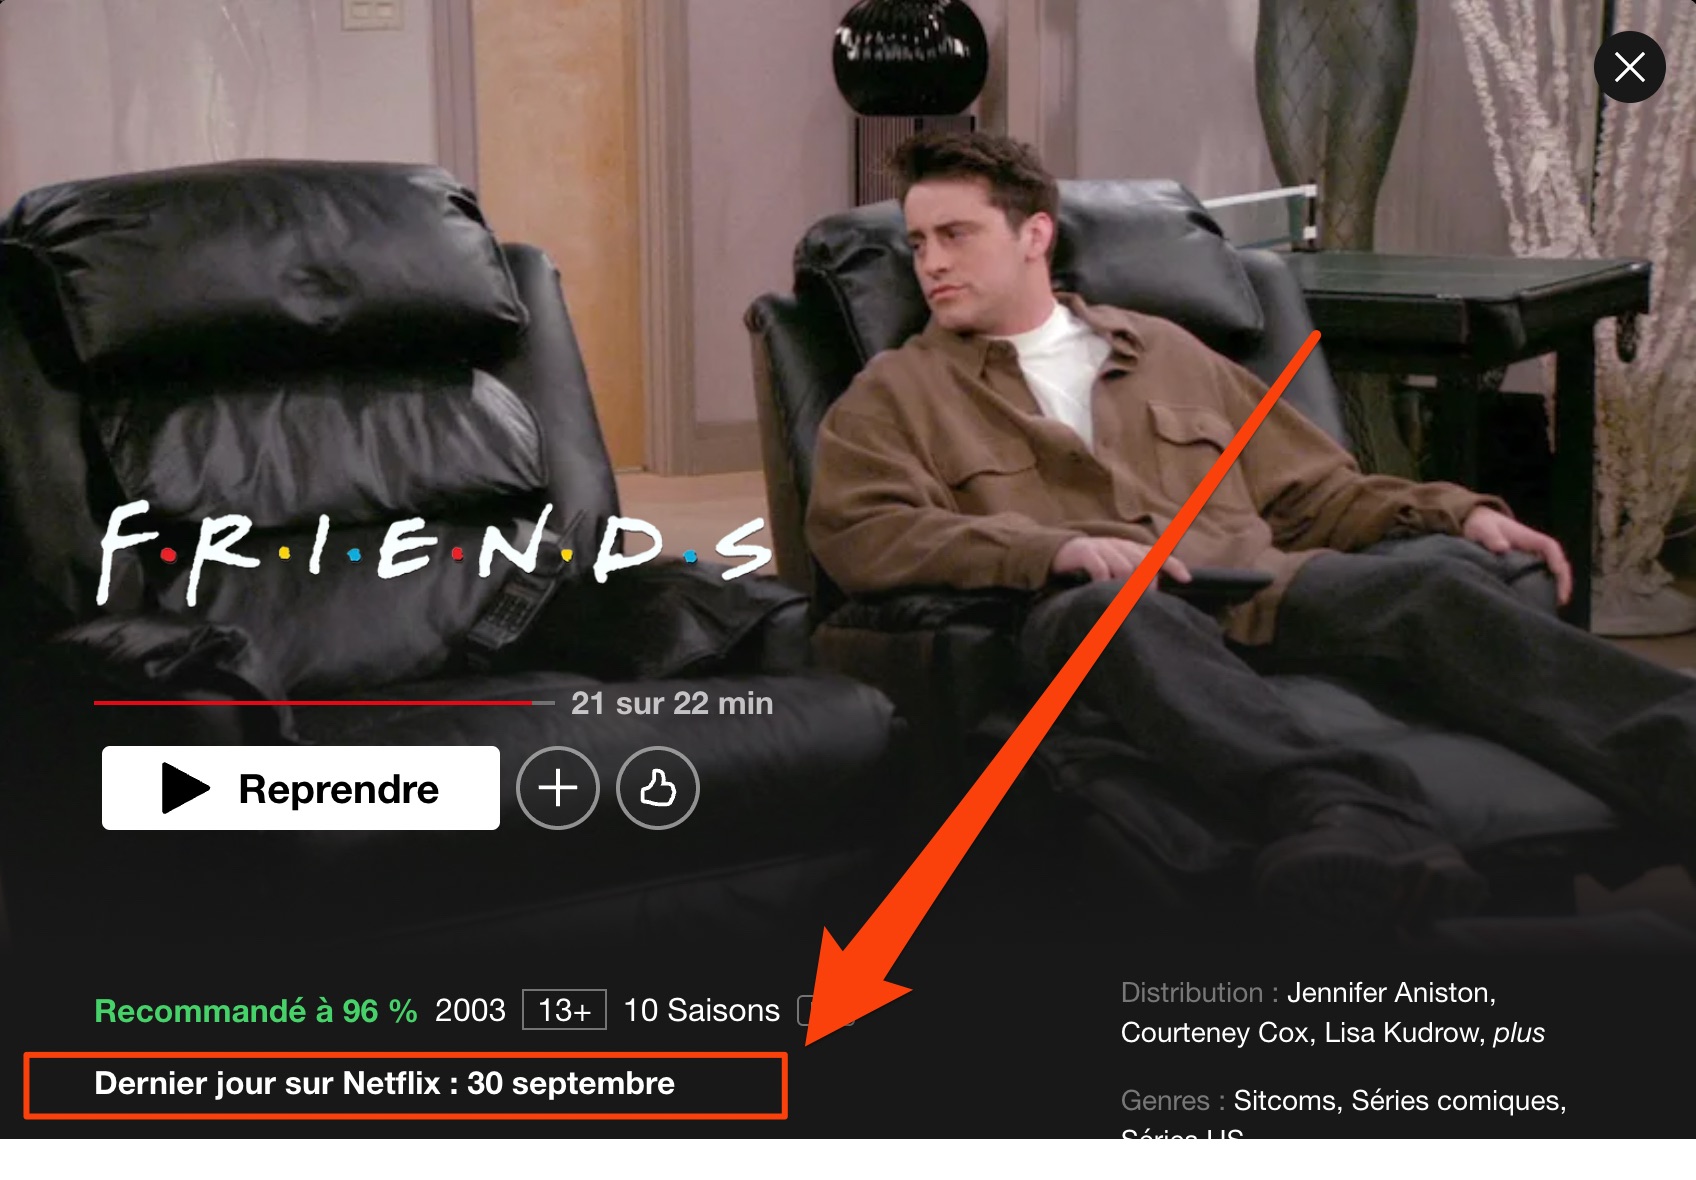 La série Friends ne sera plus offerte sur Netflix